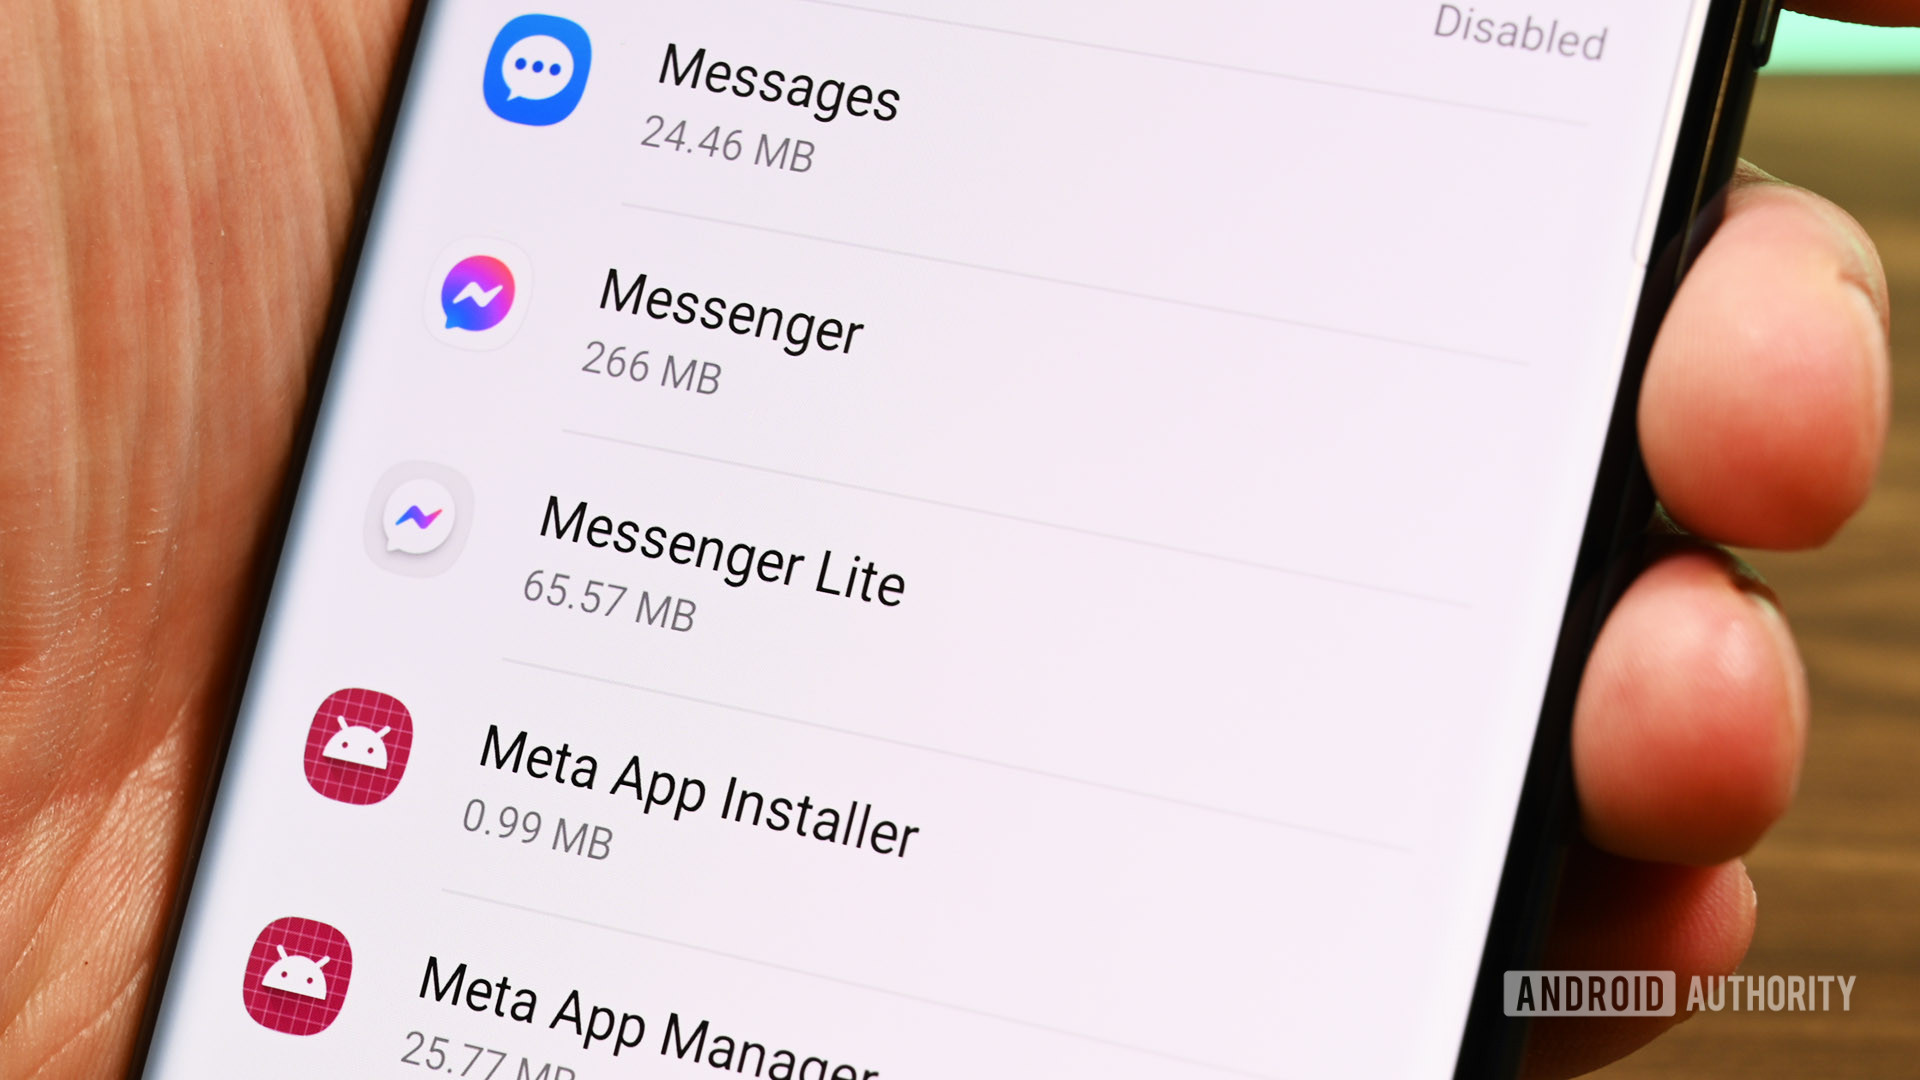 Messenger vs. Messenger Lite